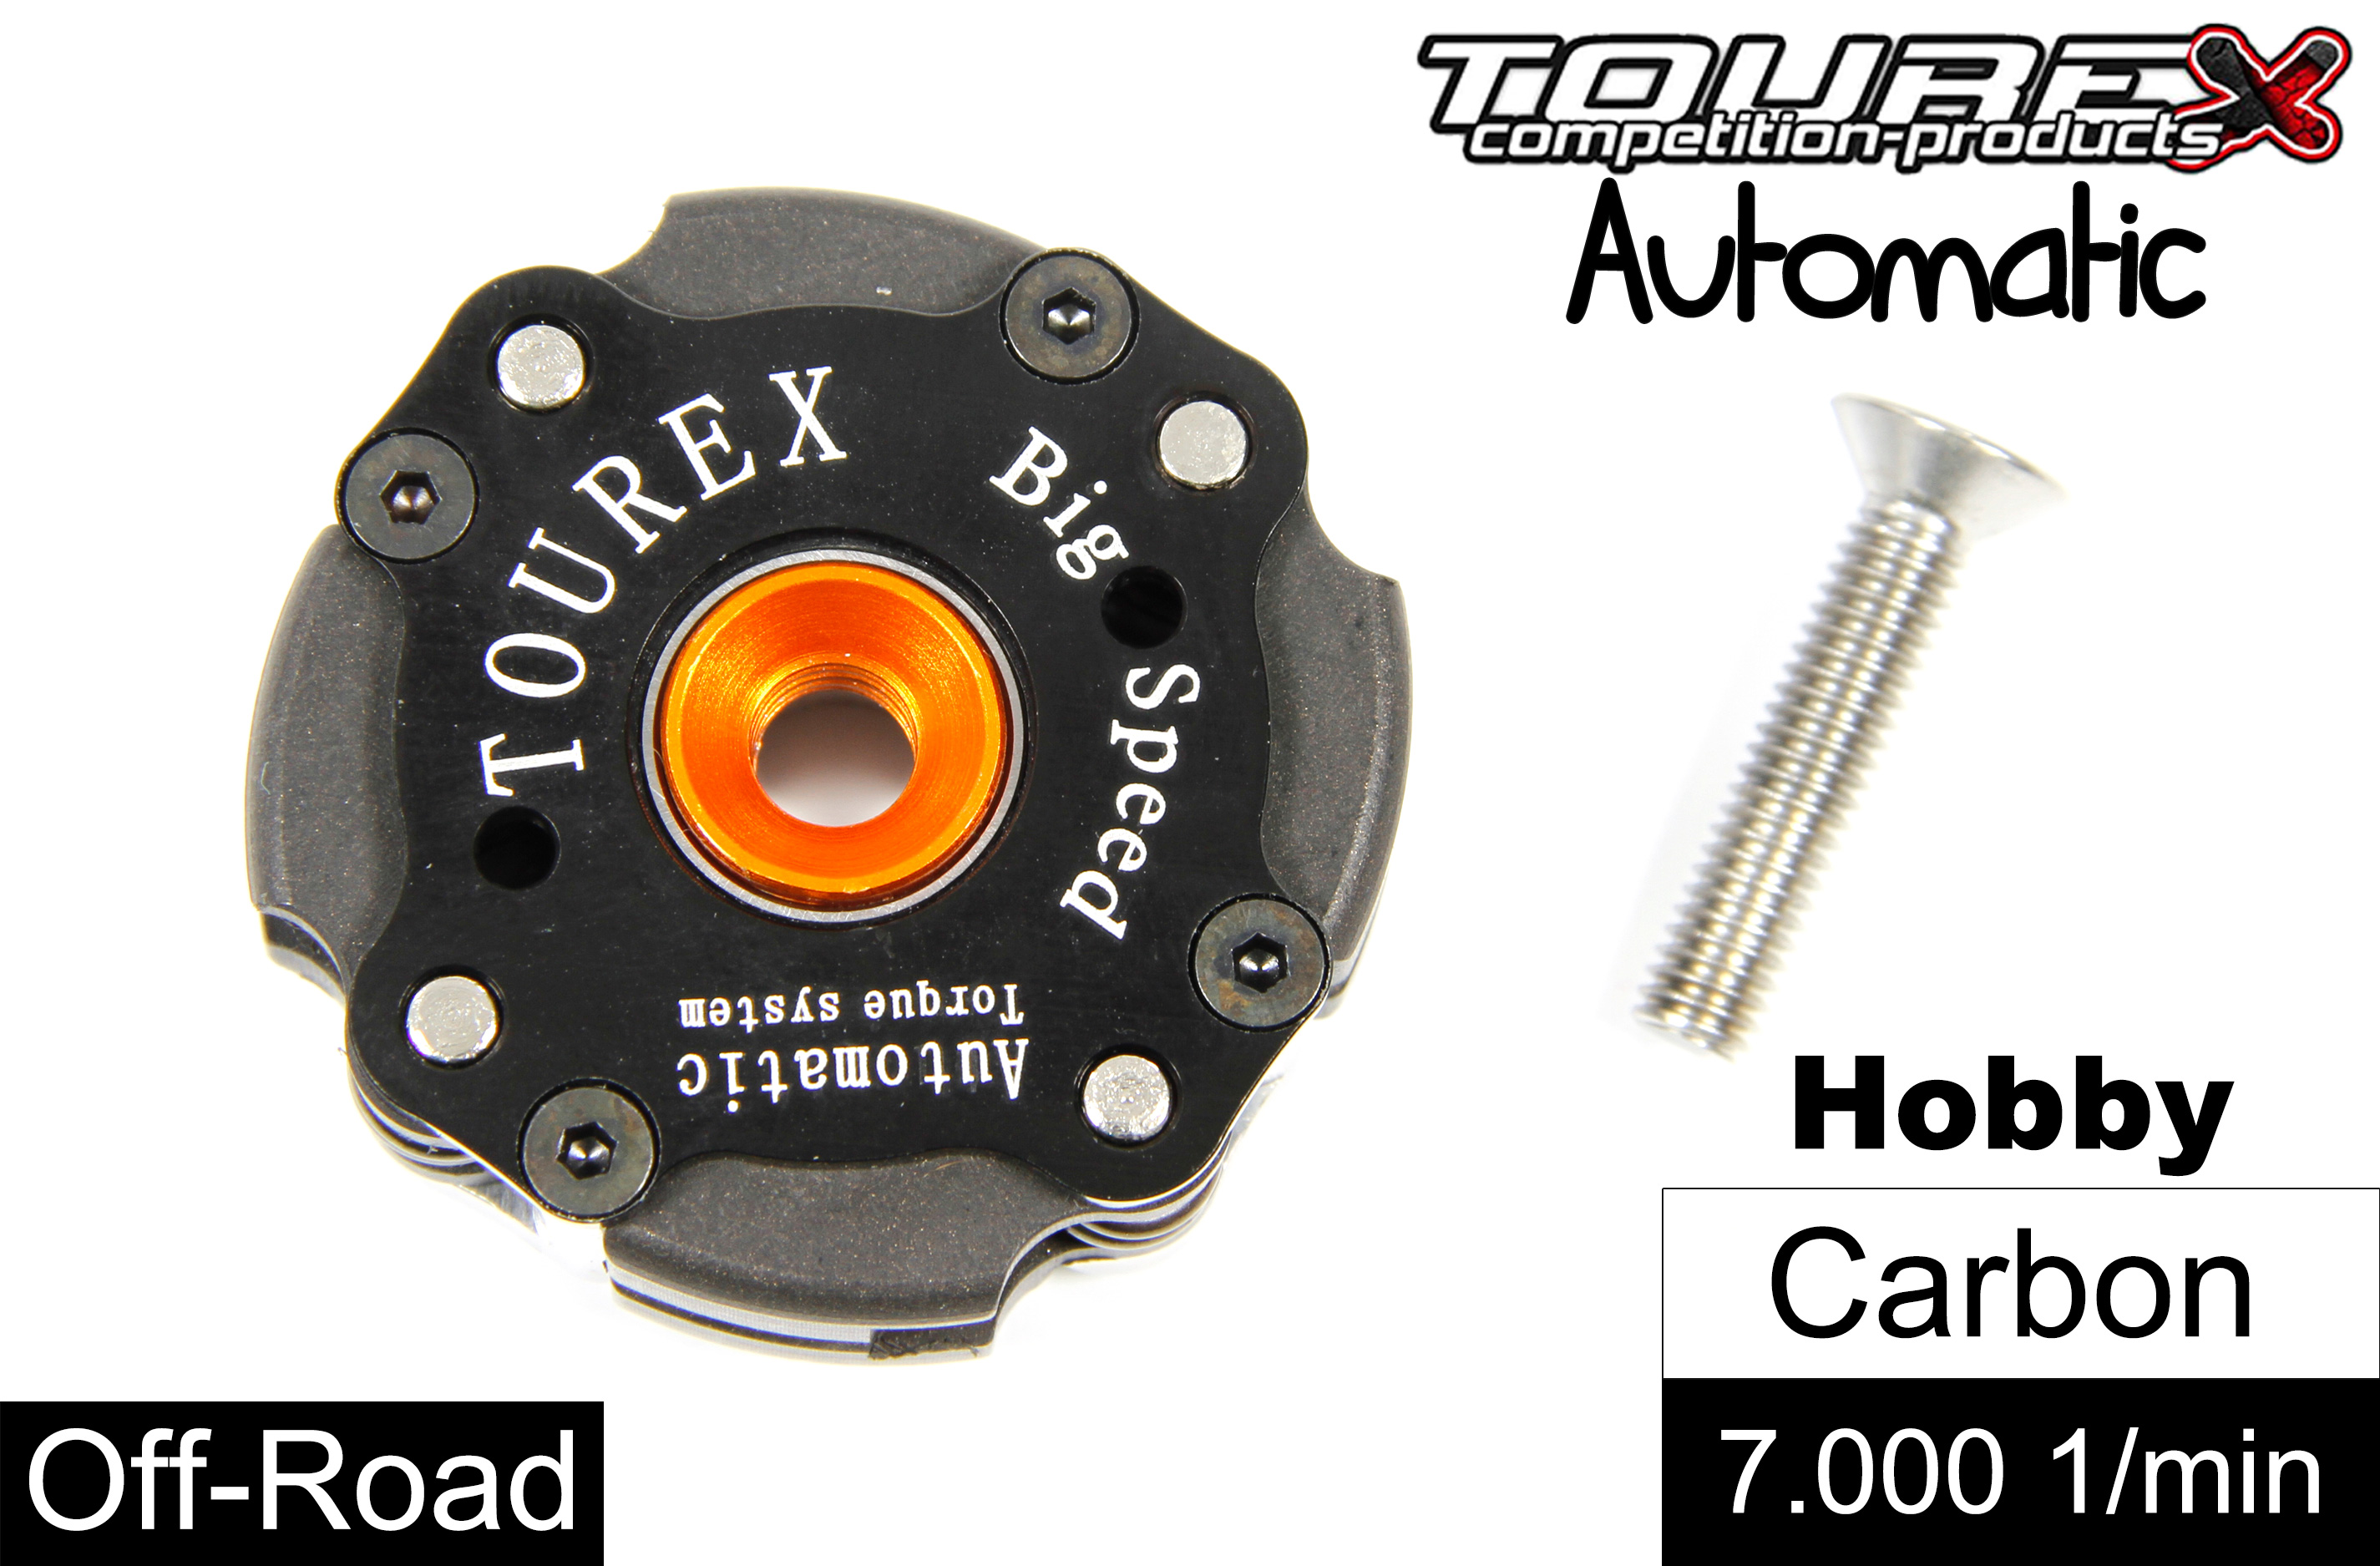 TXLA-910 Tourex Big-Speed Automatic für FG/HPI/Losi/Smartech und viele mehr